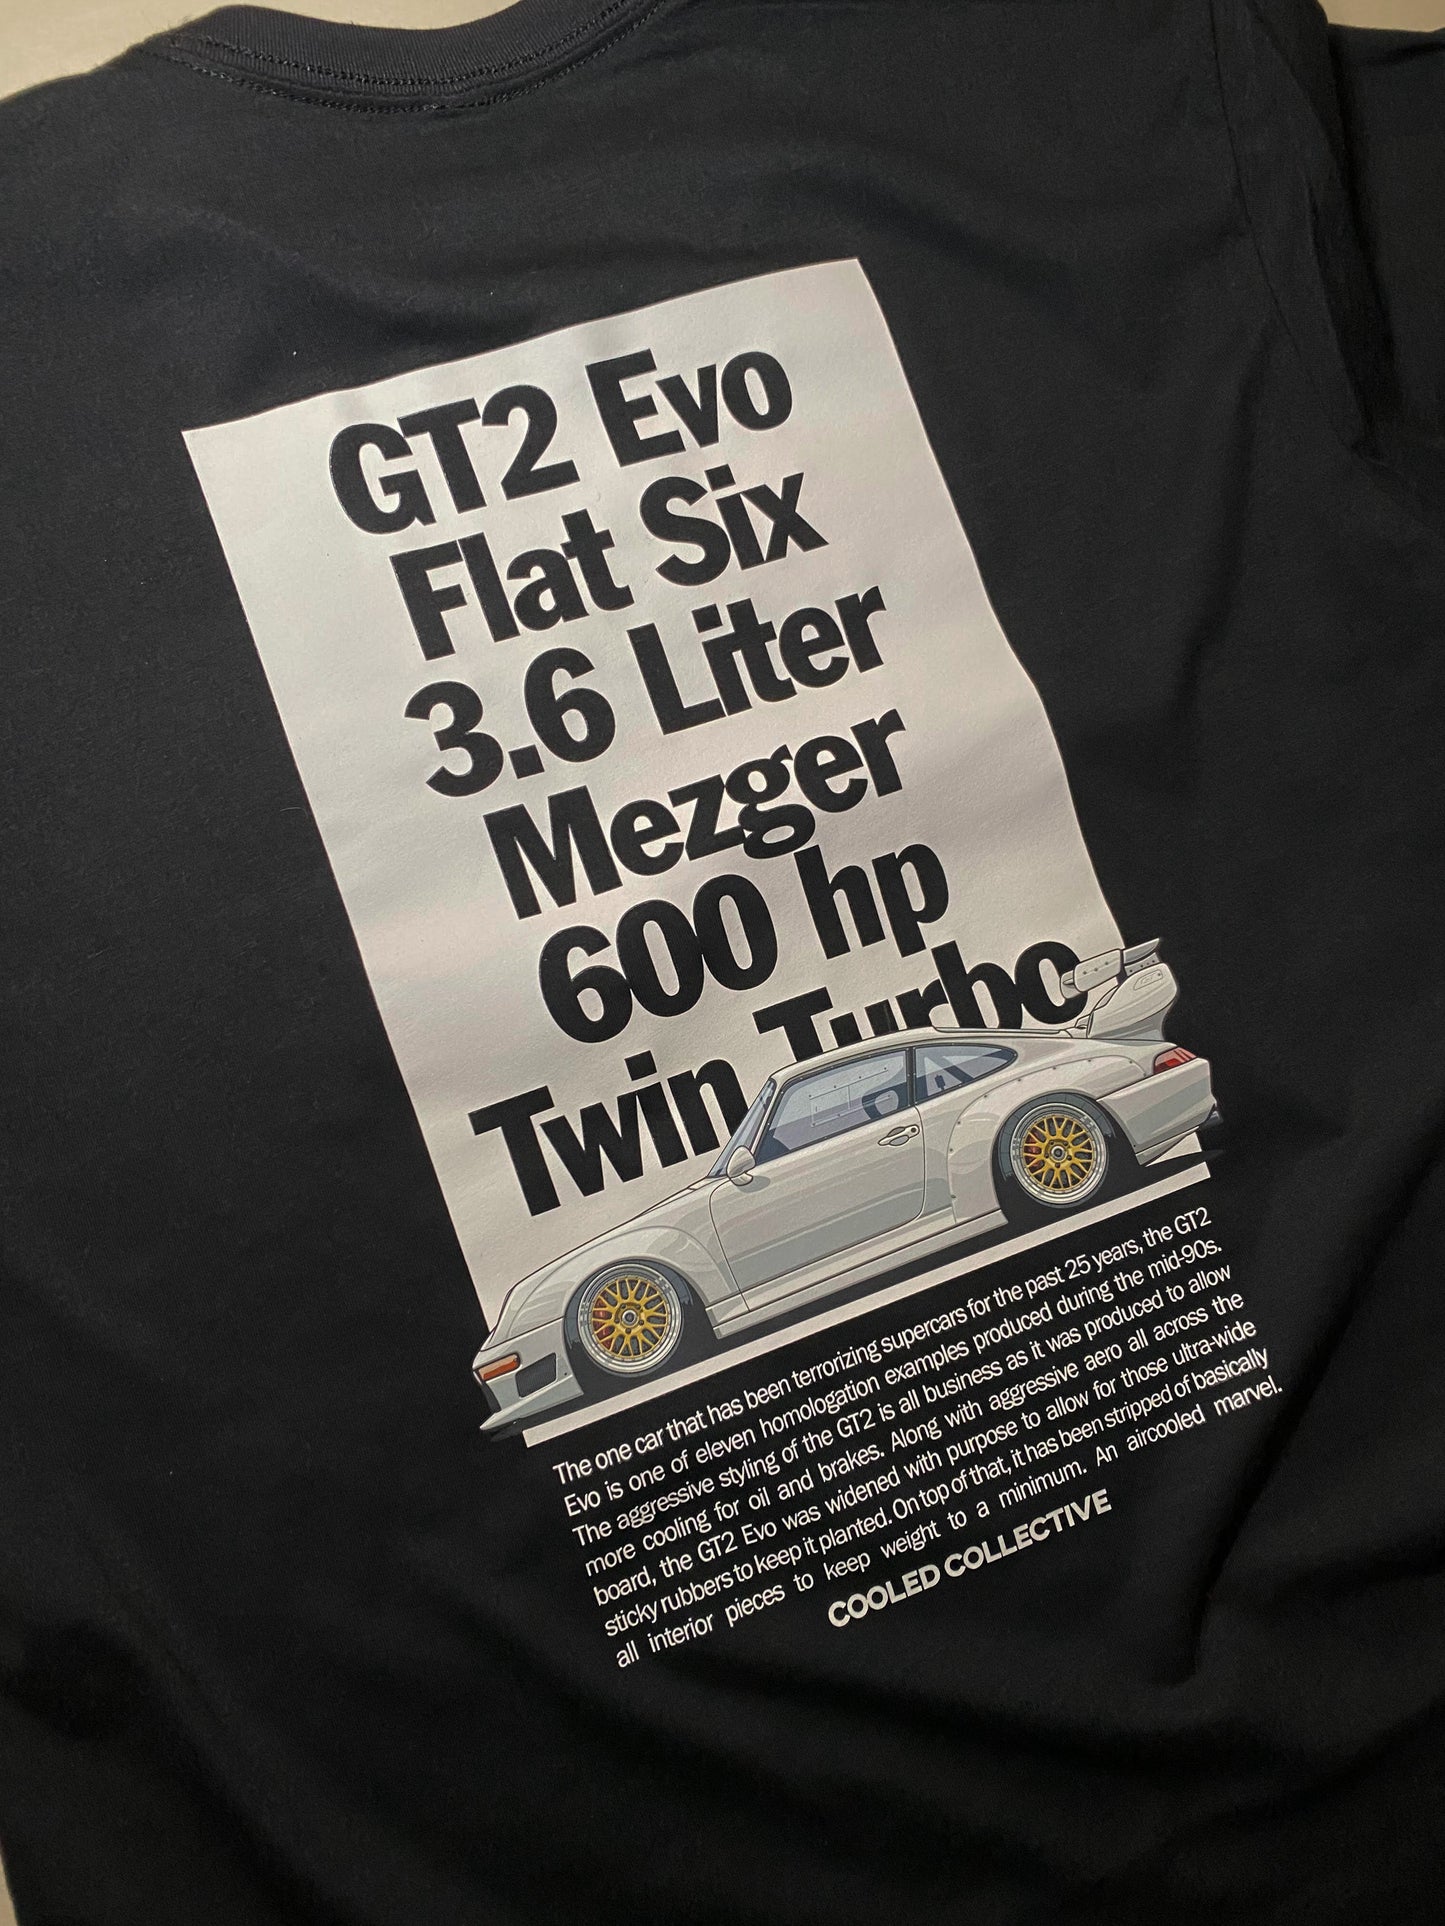 Air Cooled GT2 Spec Shirt